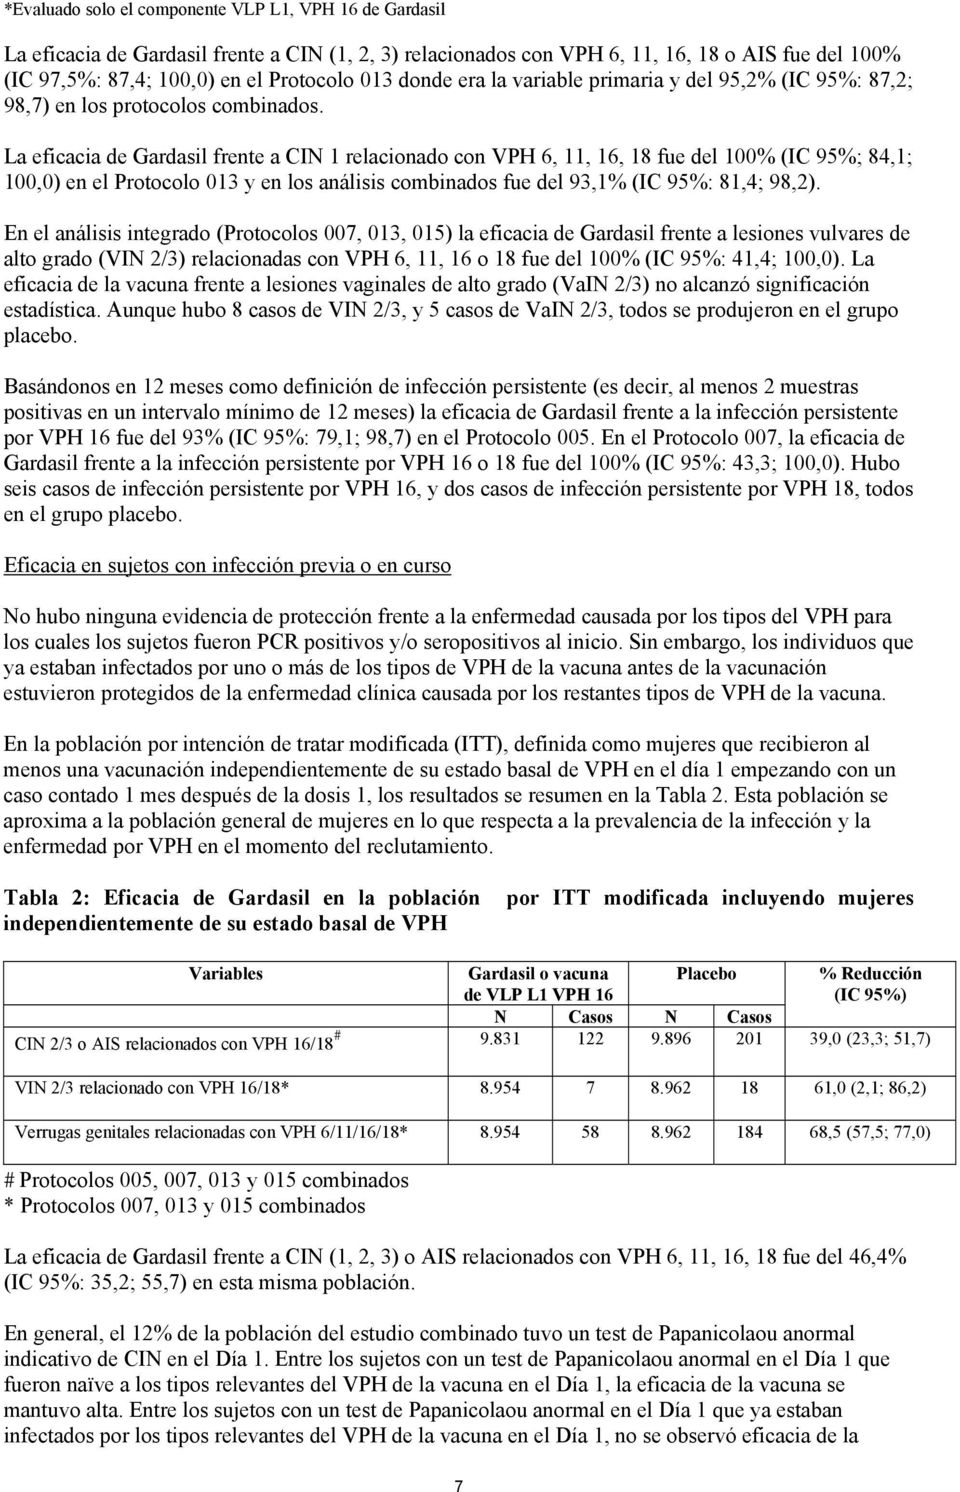 La eficacia de Gardasil frente a CIN 1 relacionado con VPH 6, 11, 16, 18 fue del 100% (IC 95%; 84,1; 100,0) en el Protocolo 013 y en los análisis combinados fue del 93,1% (IC 95%: 81,4; 98,2).